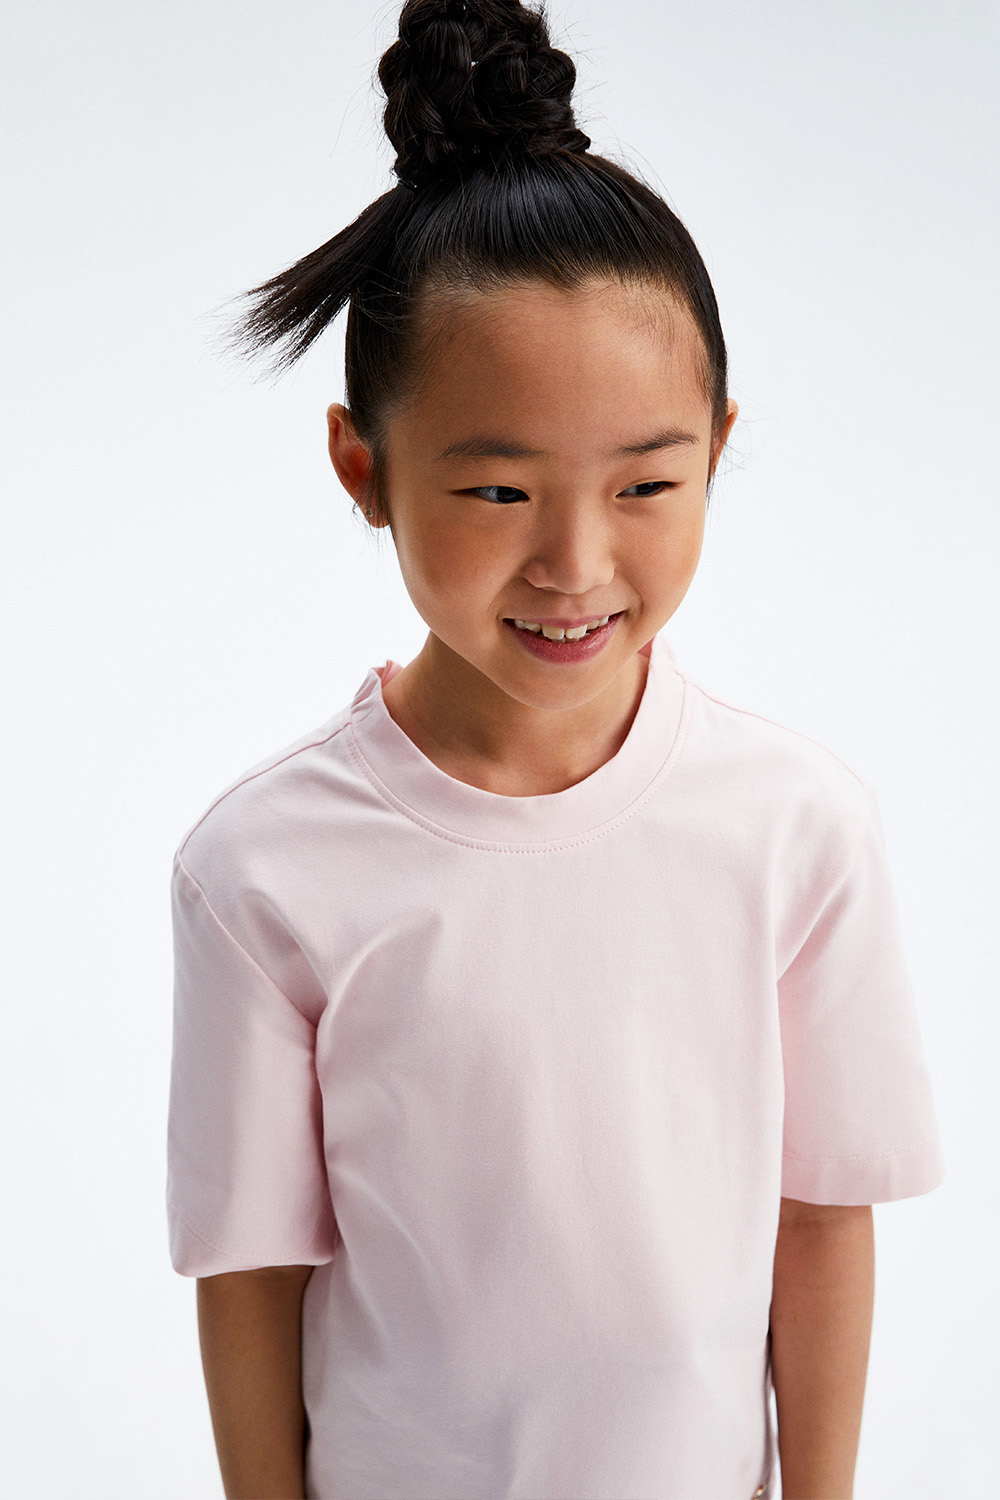 Хлопковая футболка с V-образным вырезом (SSLWG-328-22926-401) Silver Spoon